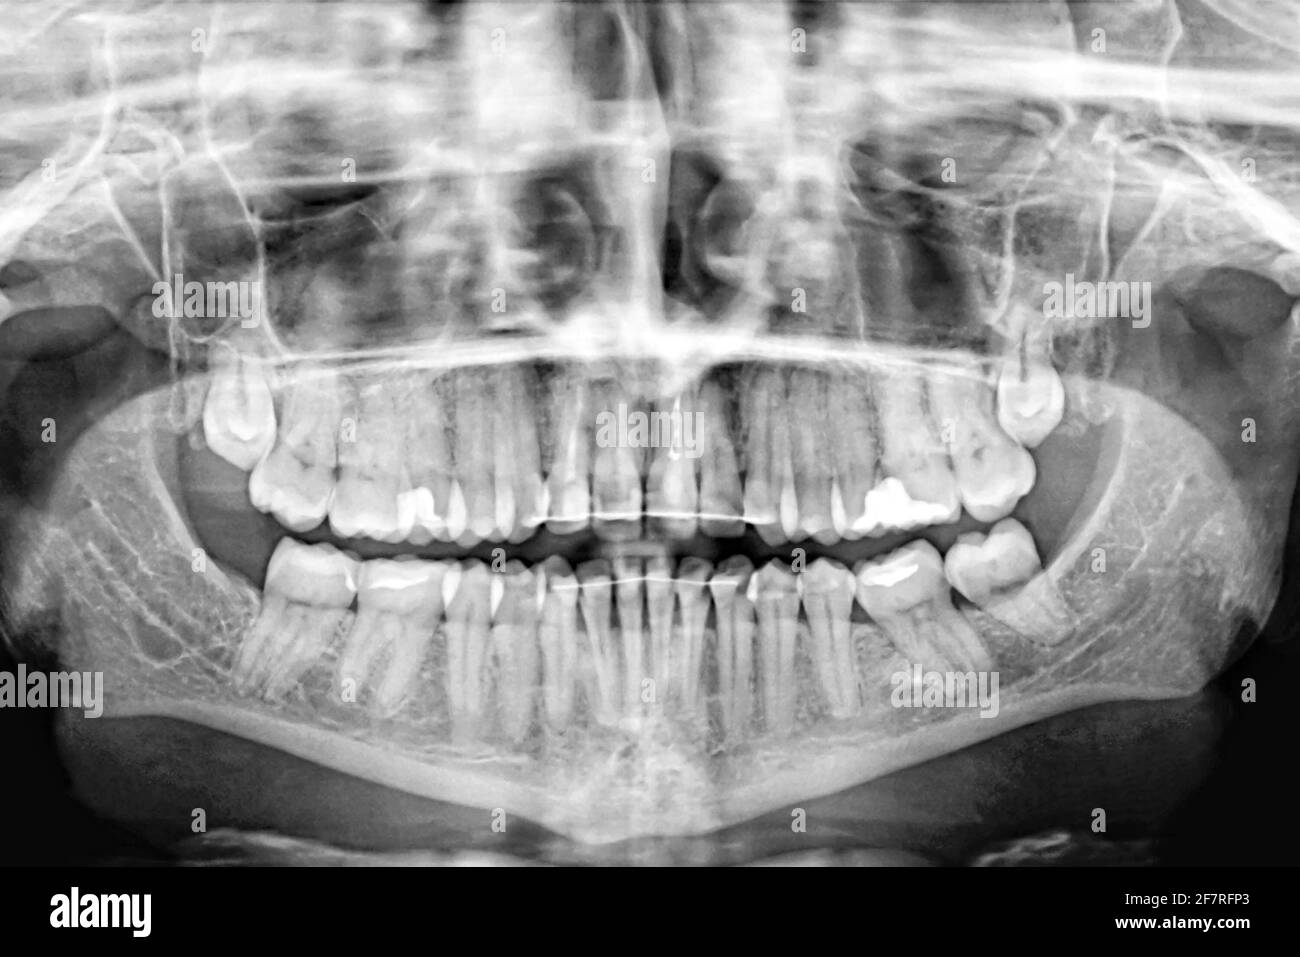 Panorama-Röntgenaufnahme von menschlichen Zähnen.Untersuchung und Behandlung. Zahnpflege.Banner. Stockfoto